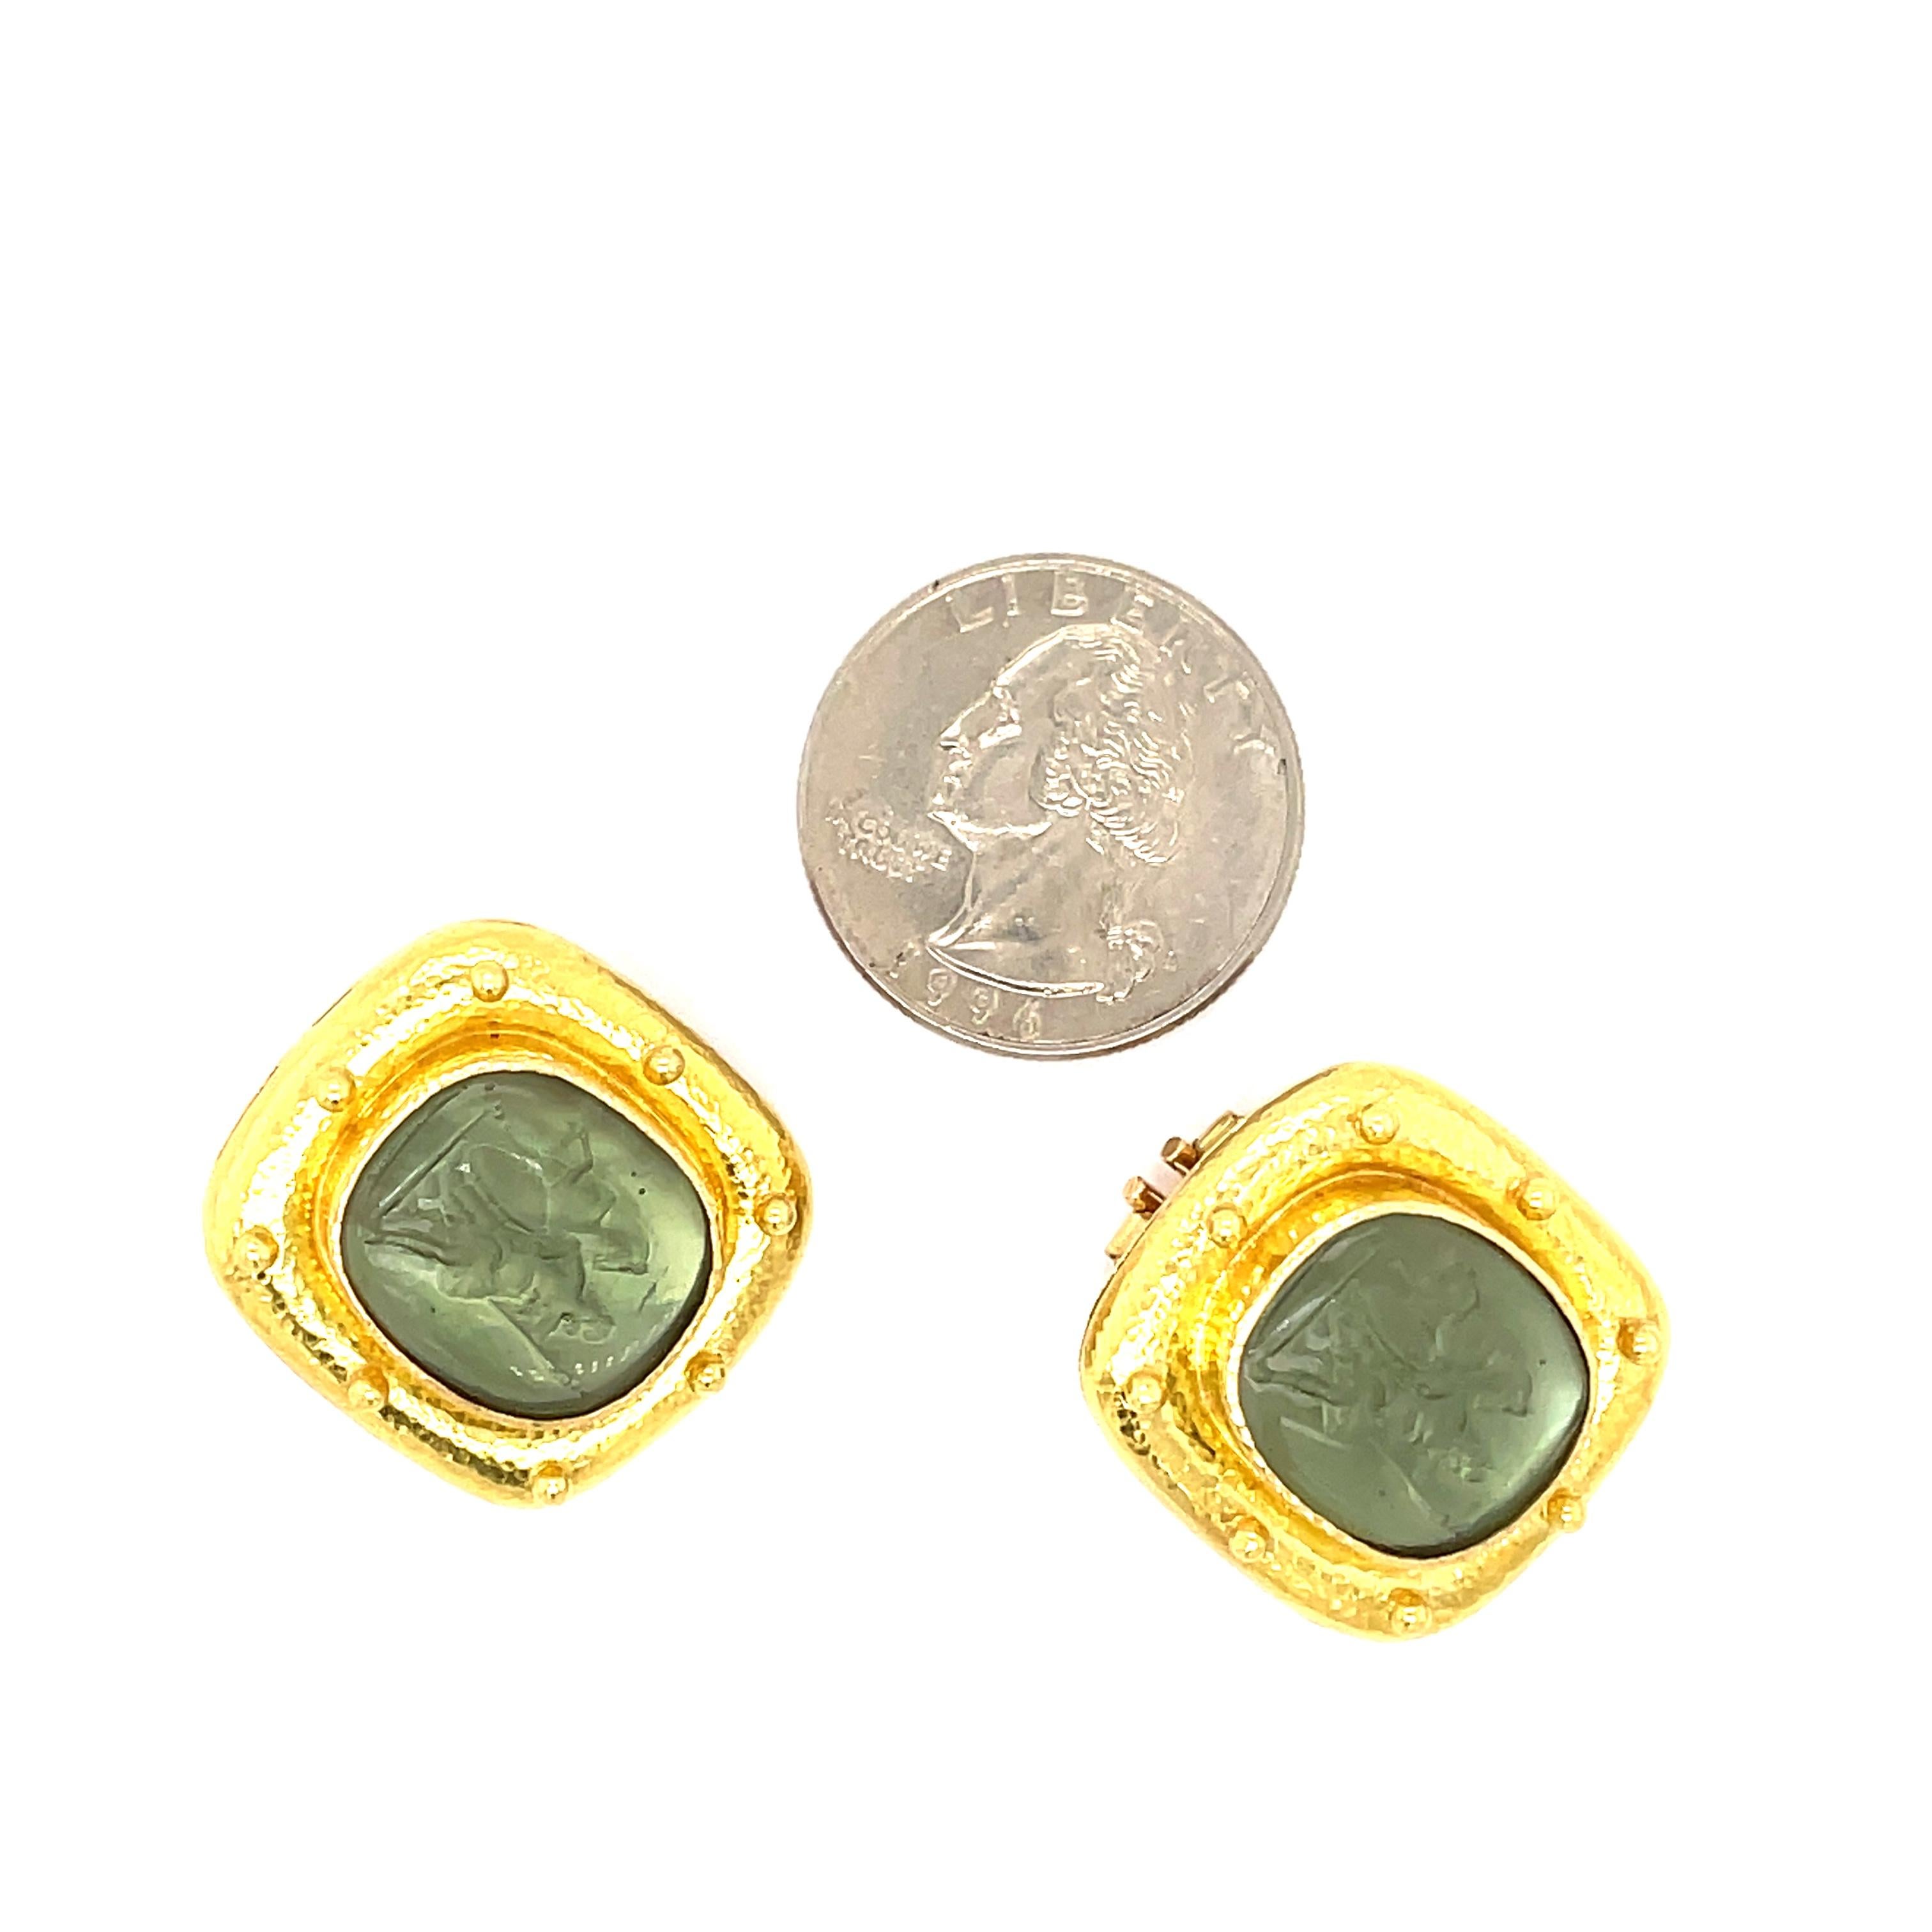 Elizabeth Locke Green Venetian Glass Earrings.  Clip Post Earrings. 
19K Yellow Gold with Green Venetian Glass 
23.3Grams
1 inch by .75 inches.  